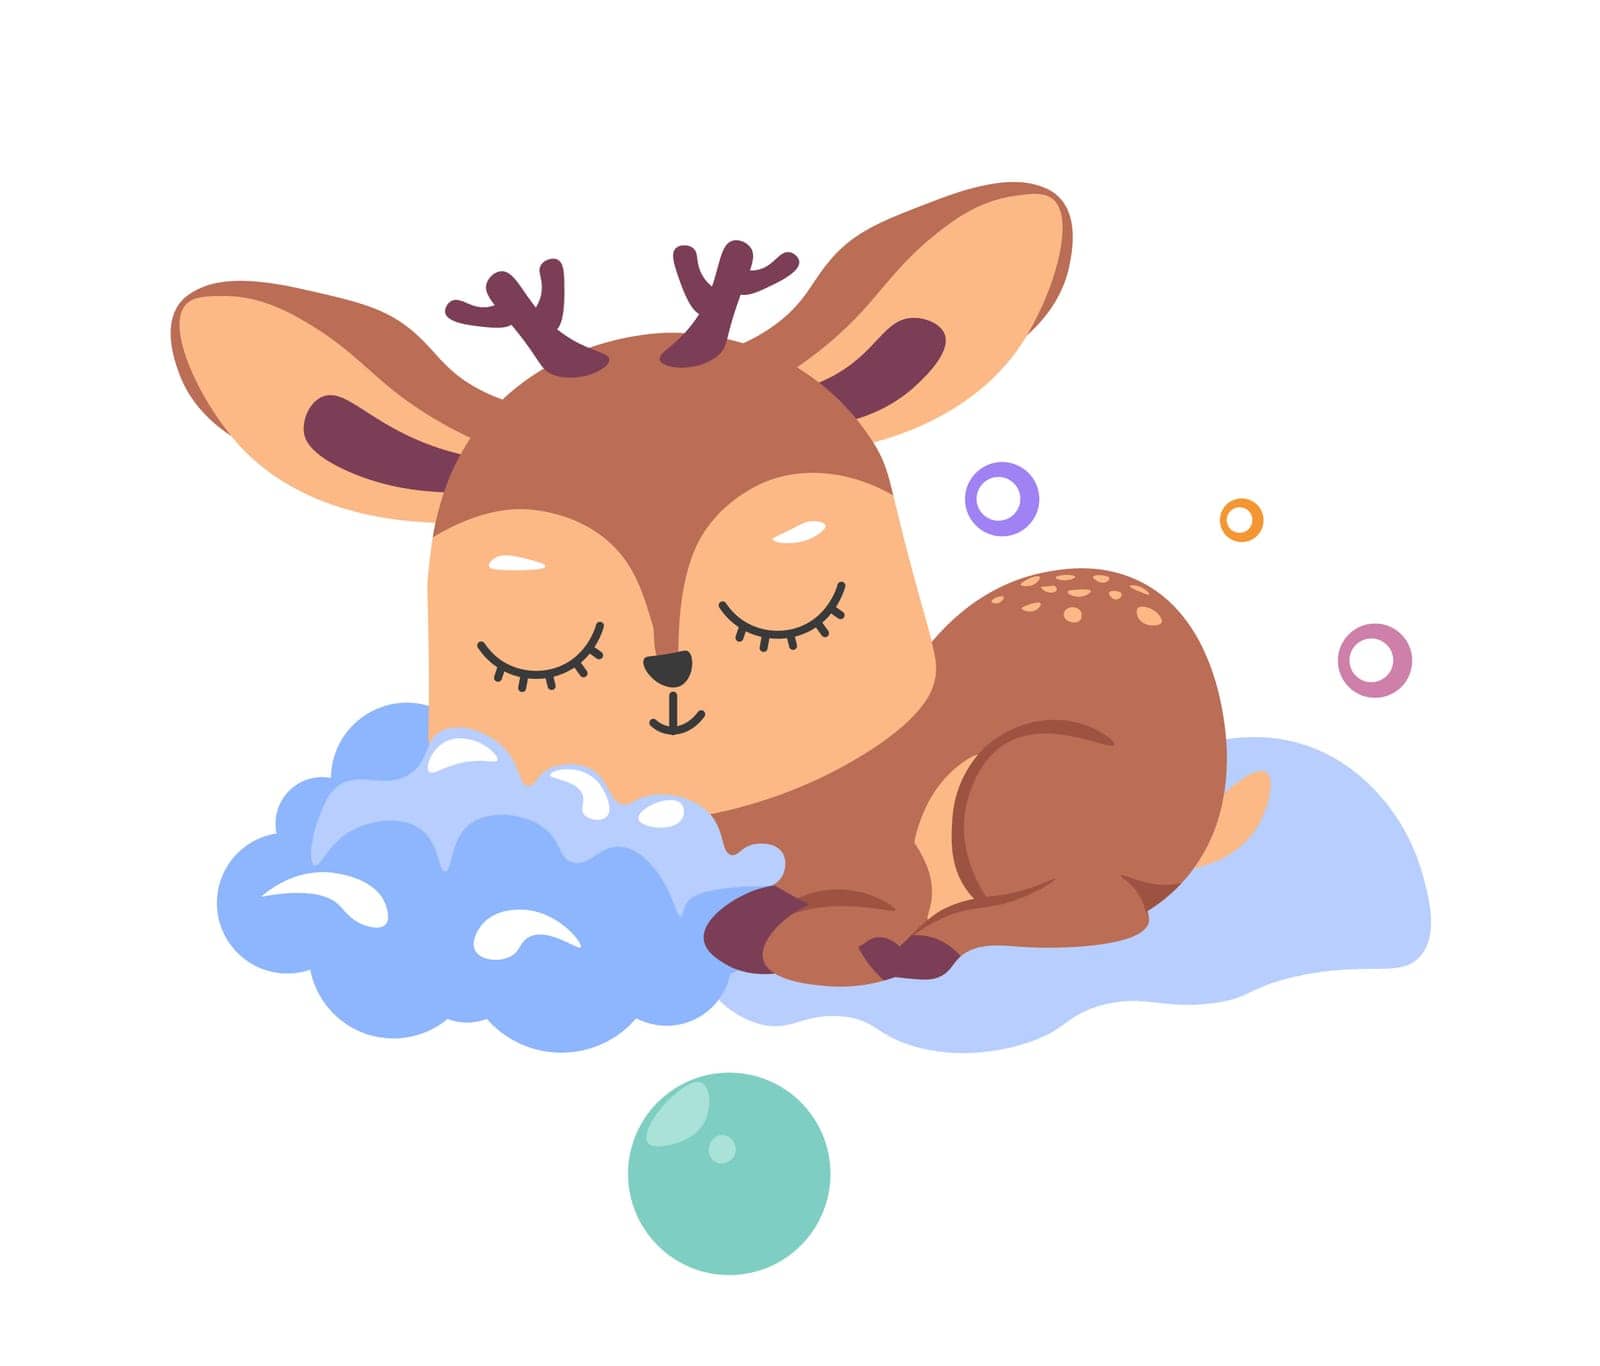 Sleepy deer animal character on fluffy clouds by Sonulkaster